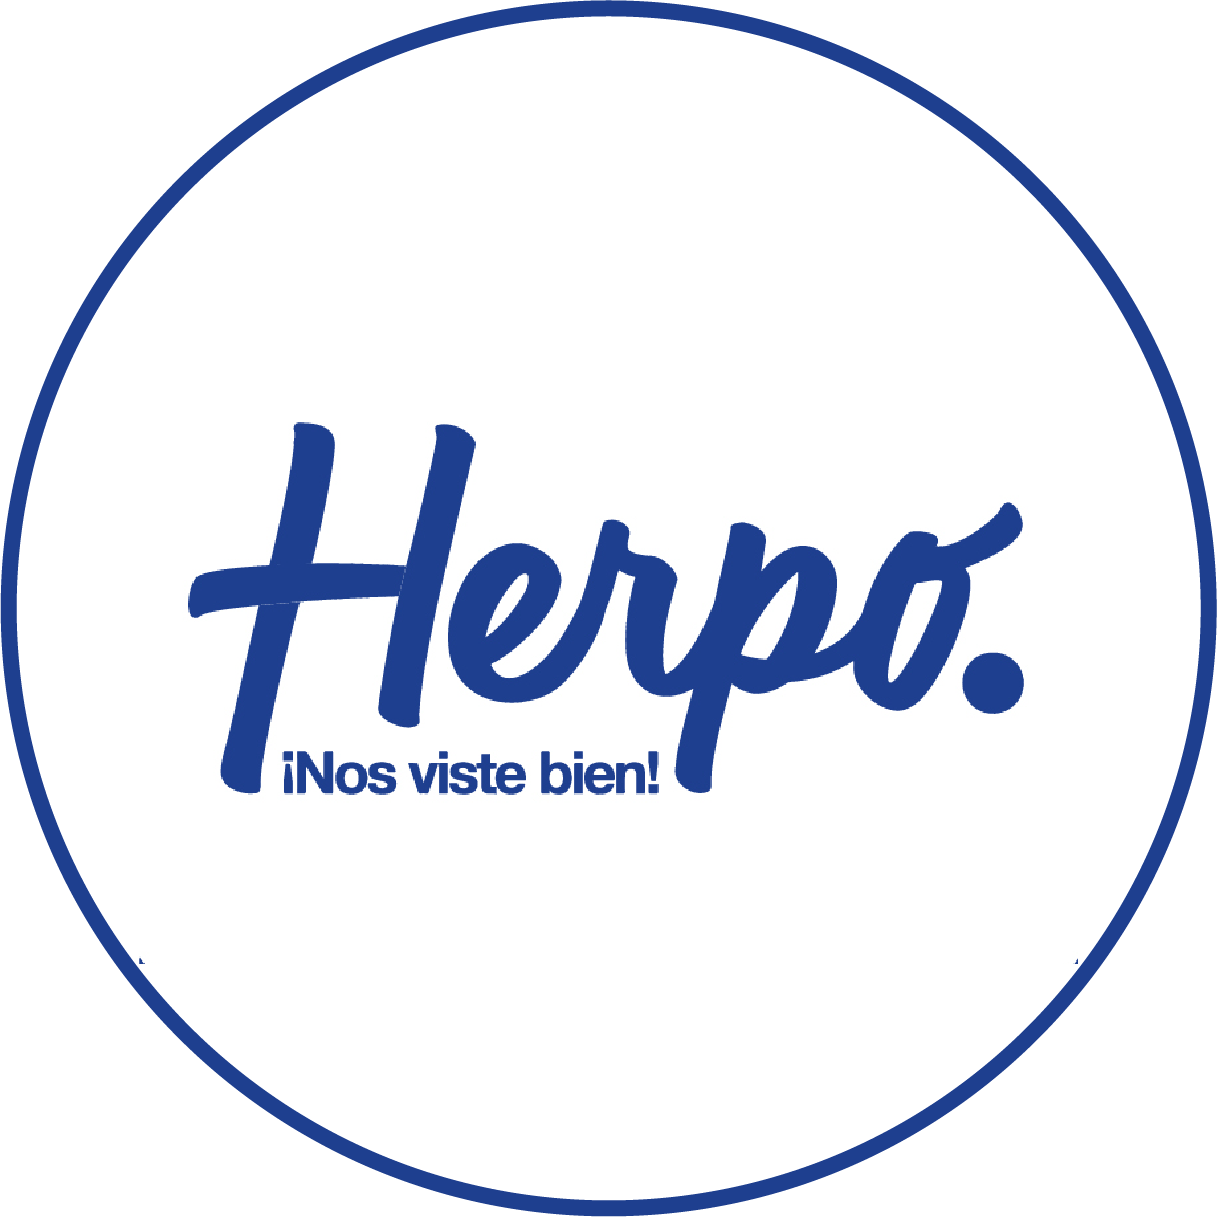 HERPO